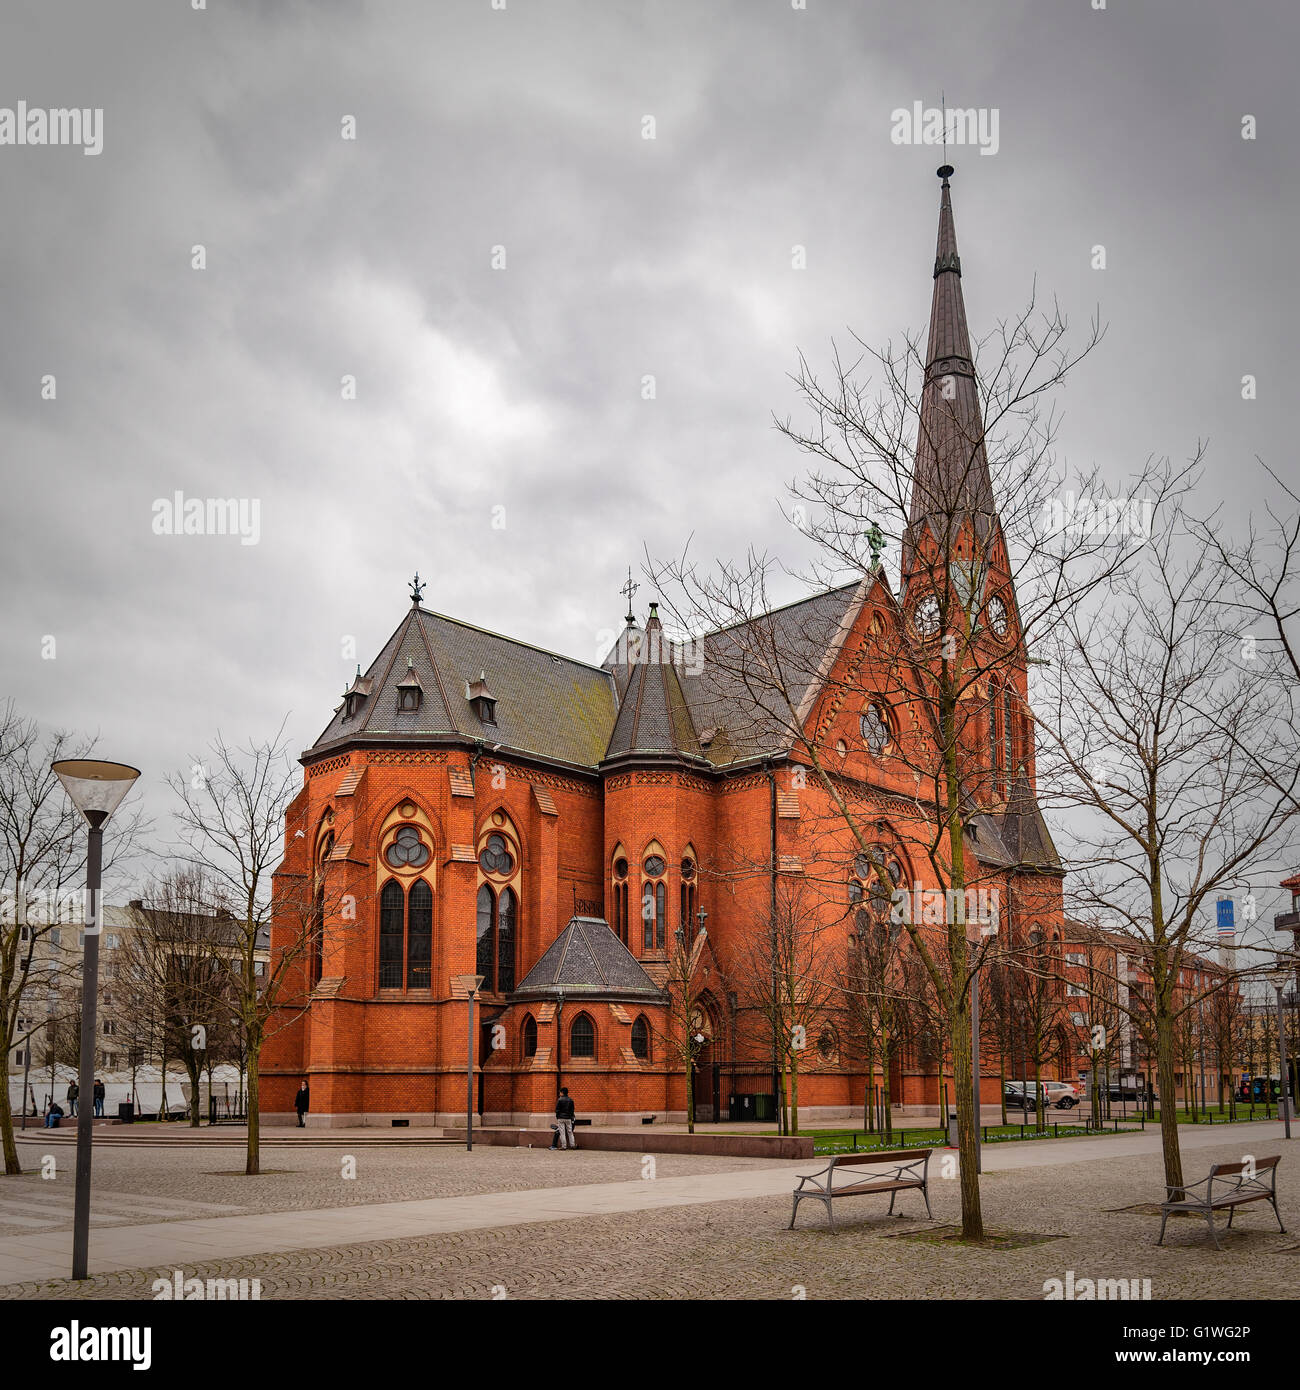 L'Eglise Gustav Adolf dans le secteur sud de la ville de Helsingborg en Suède. Banque D'Images